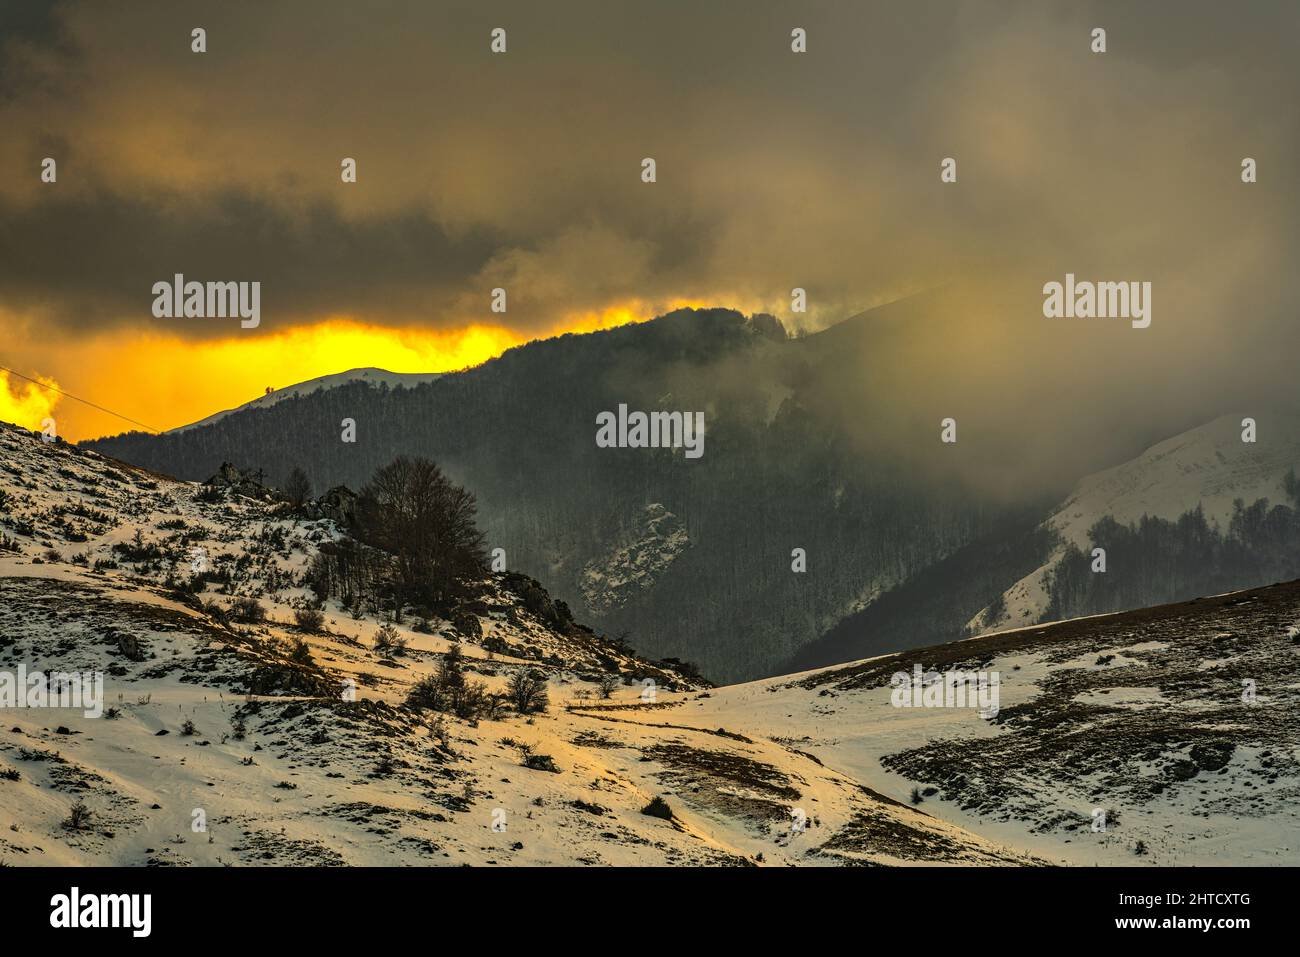 Des lumières dorées au coucher du soleil sur les sommets enneigés des montagnes des Abruzzes. Ciel nuageux. Roccaraso, province de l'Aquila, Abruzzes, Italie, Europe Banque D'Images